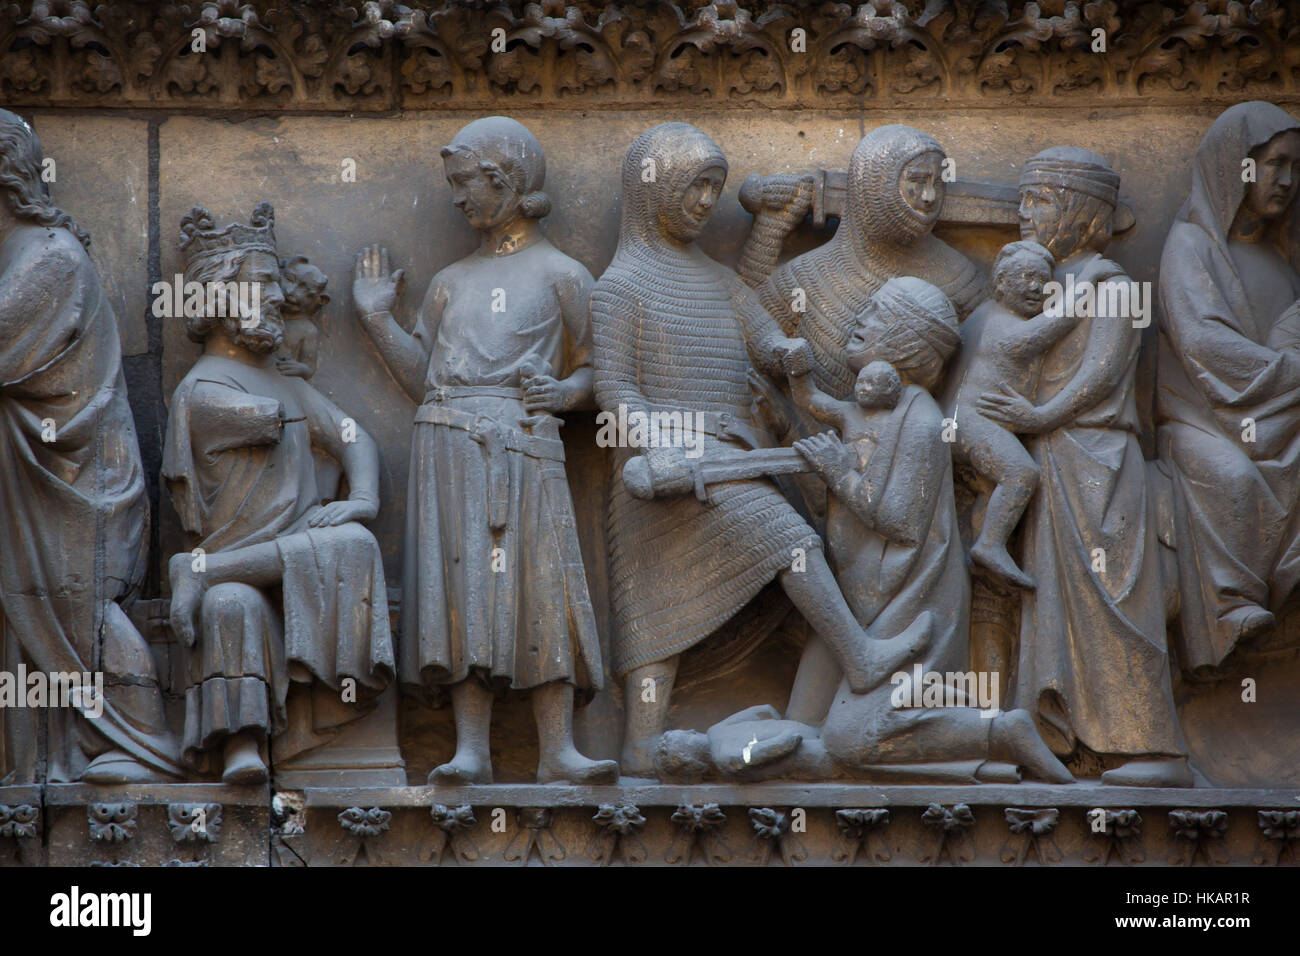 El rey Herodes el Grande y la matanza de los inocentes. Detalle del tímpano gótico circa 1250 en la fachada norte de la catedral de Notre-Dame (Notre-Dame de París) en París, Francia. Foto de stock